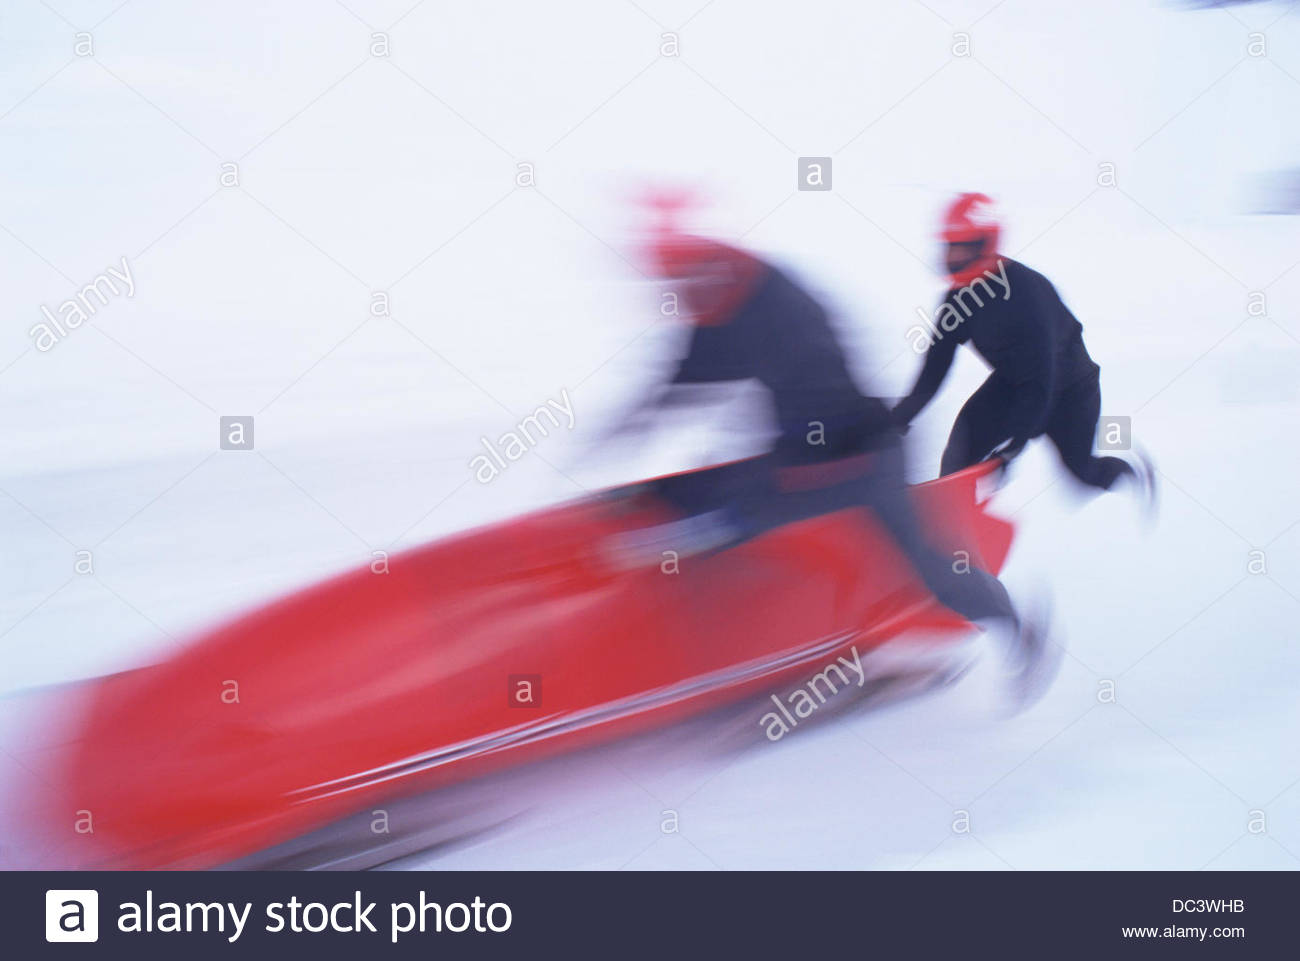 Amateur bob sledding